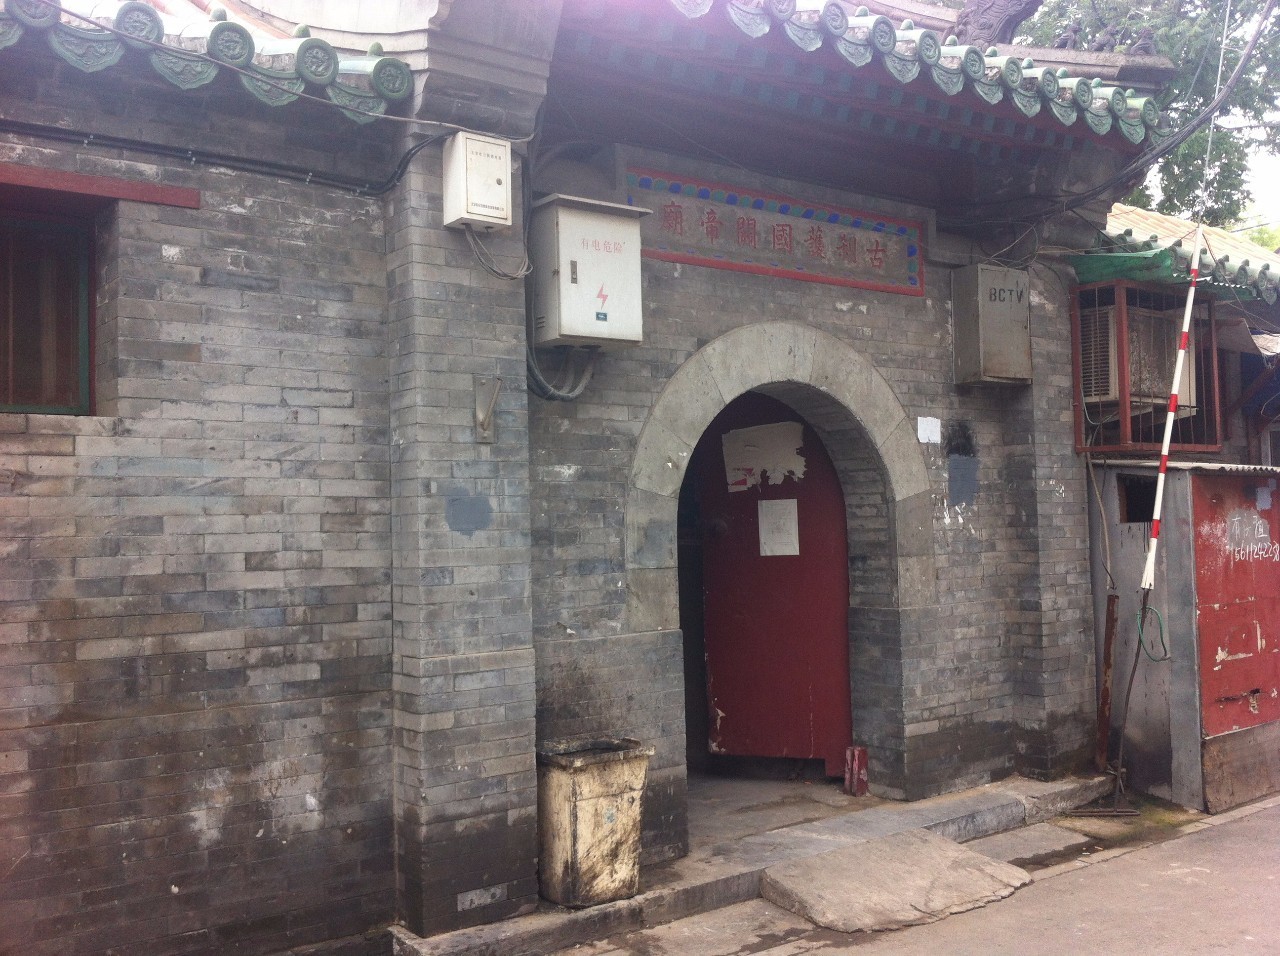 北京最短的胡同:一尺大街 30 北京最早的天主教堂:宣武门天主堂 31